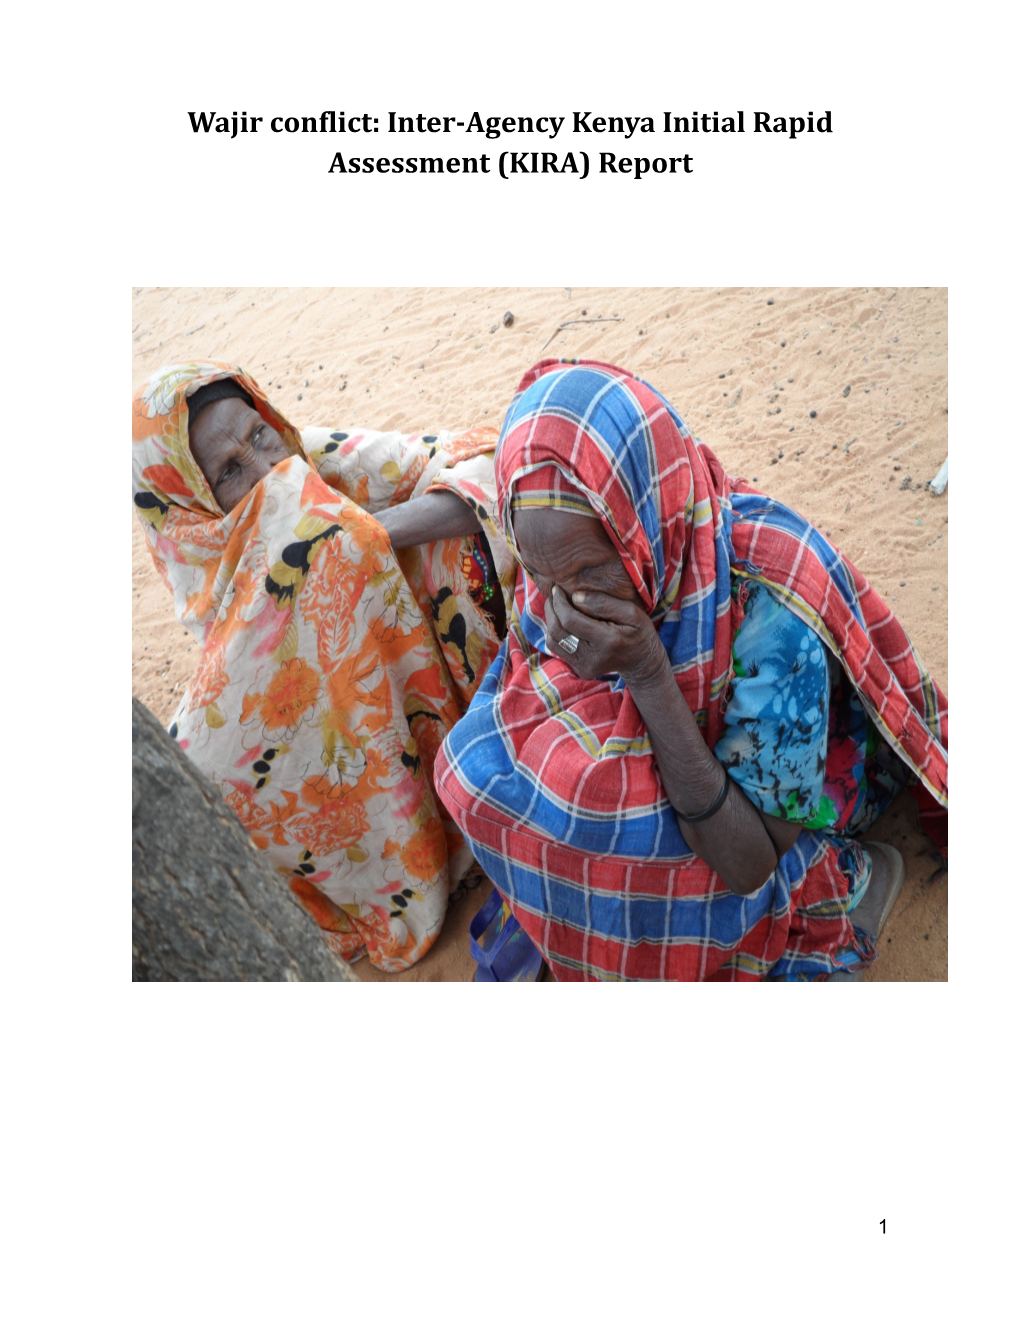 Wajir Conflict: Inter-Agency Kenya Initial Rapid Assessment (KIRA) Report